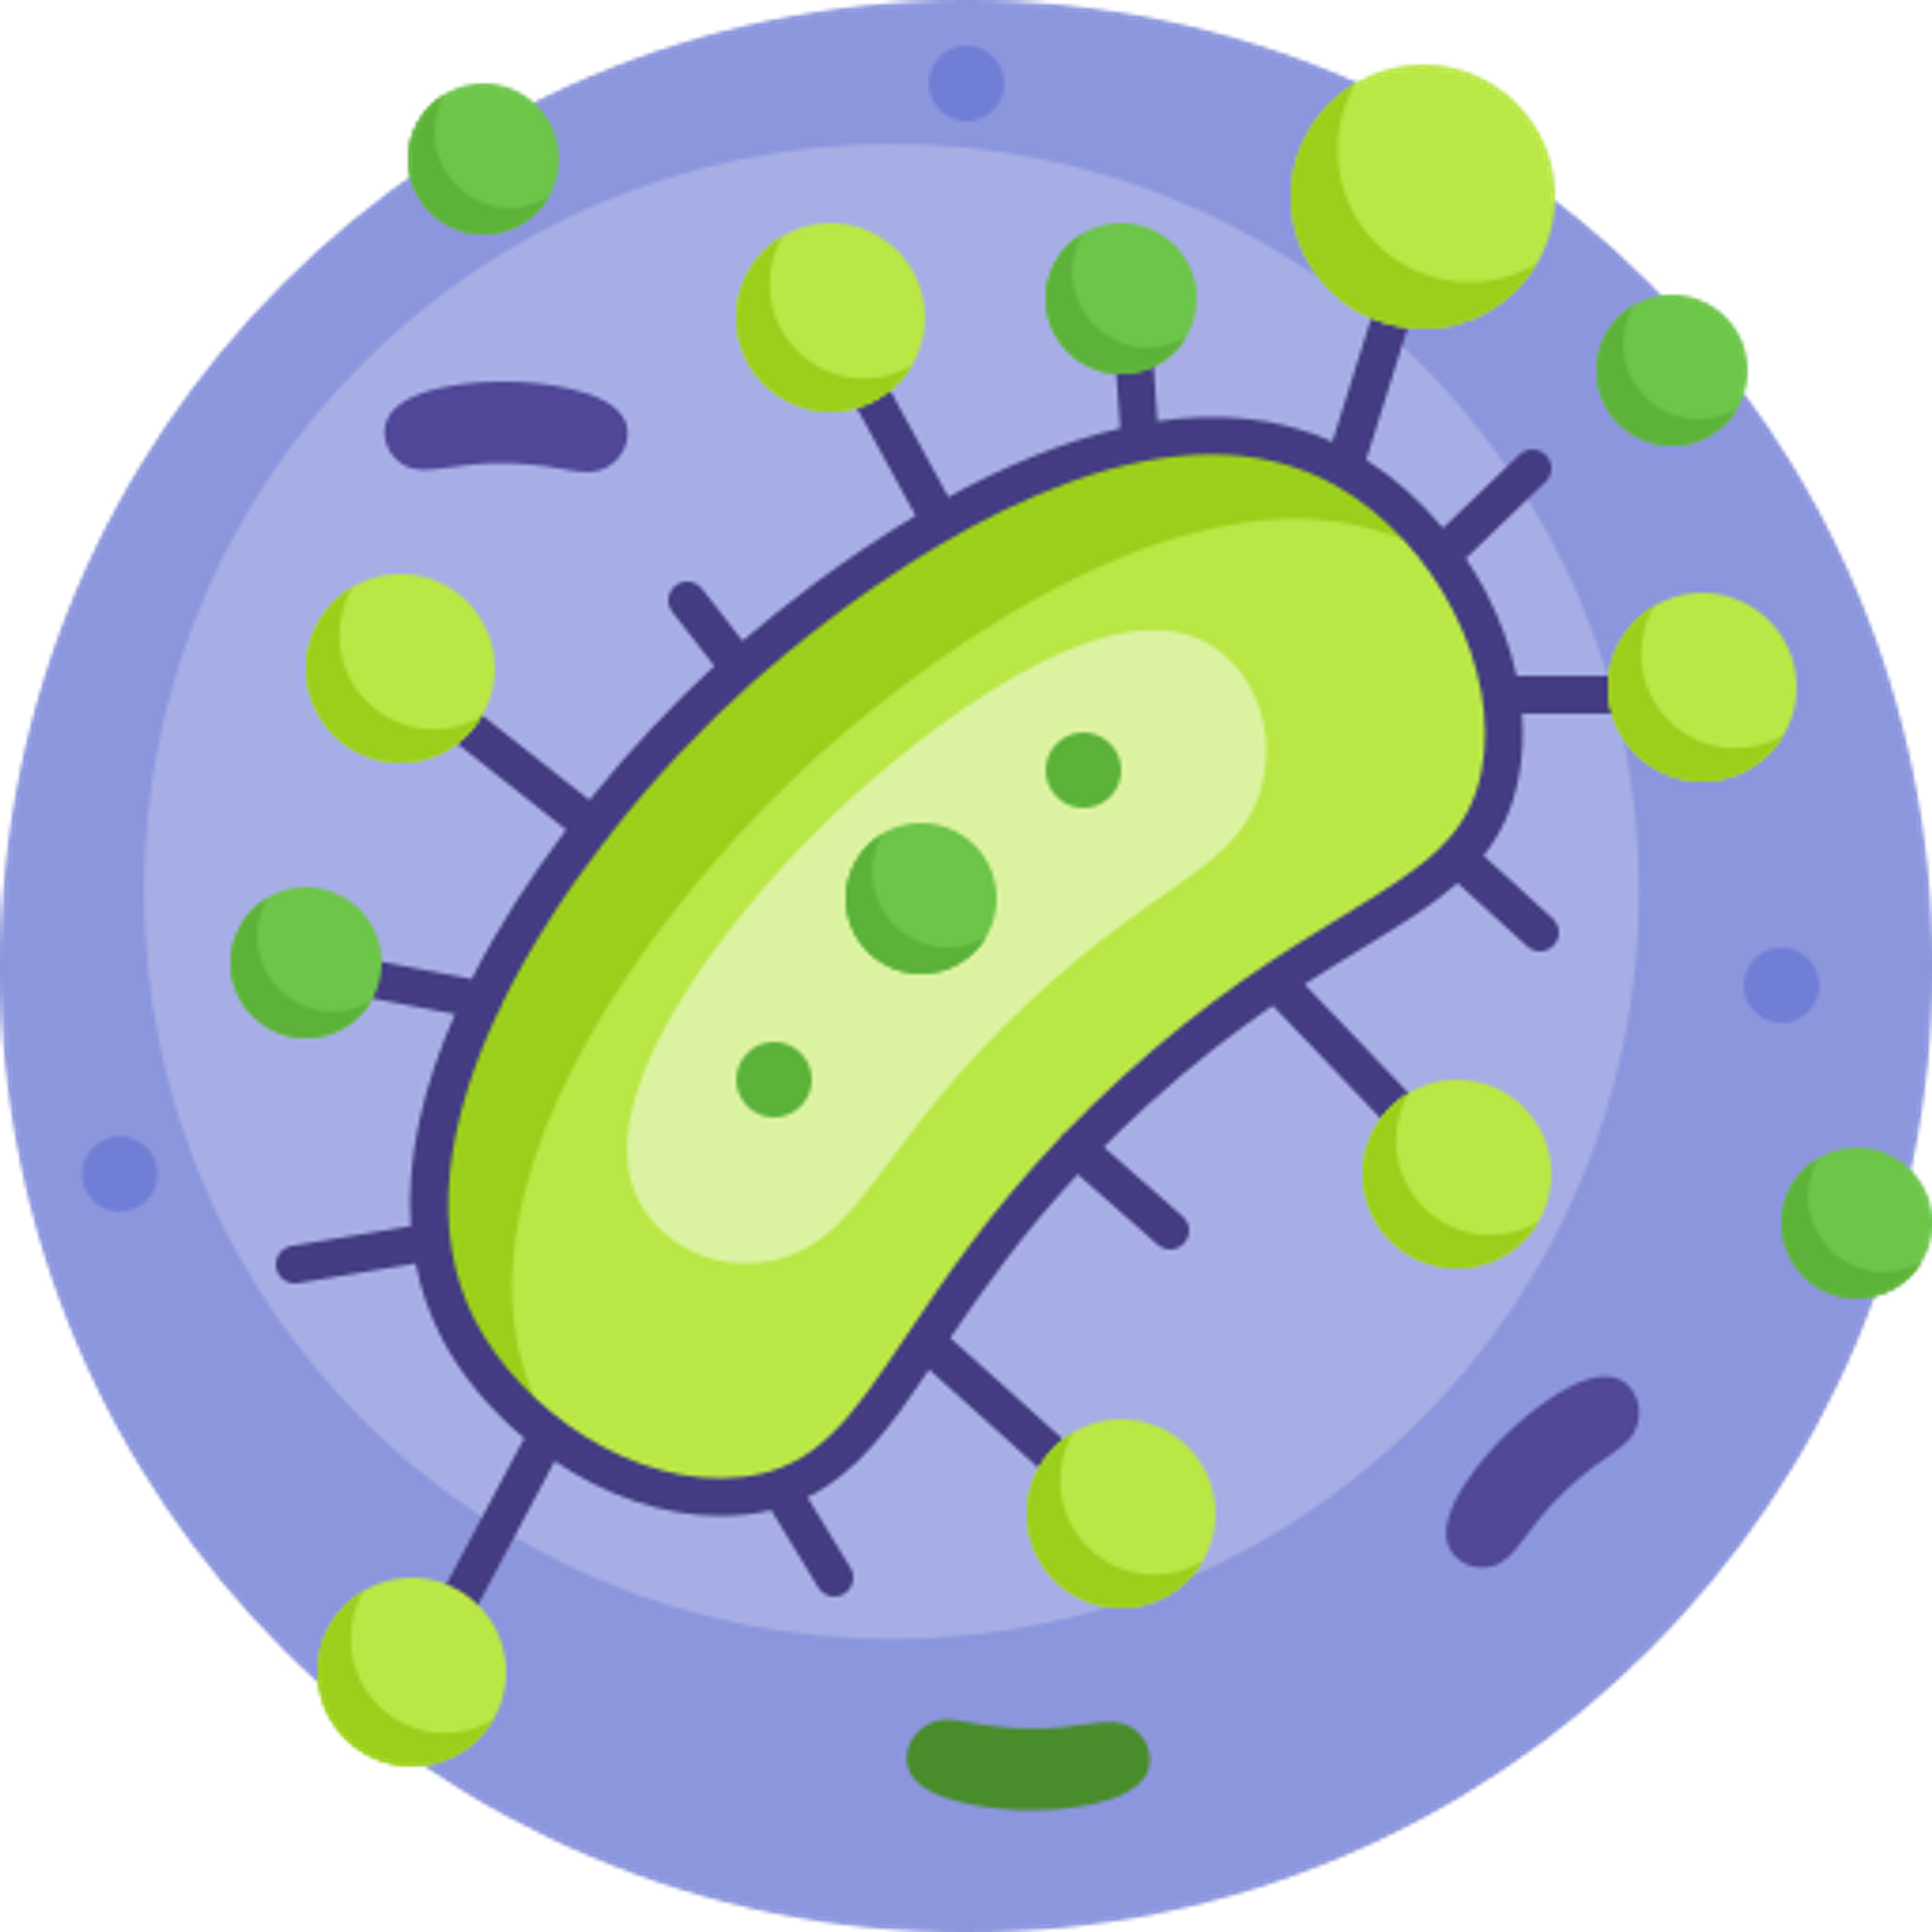 Bacterias, microbes & viruses